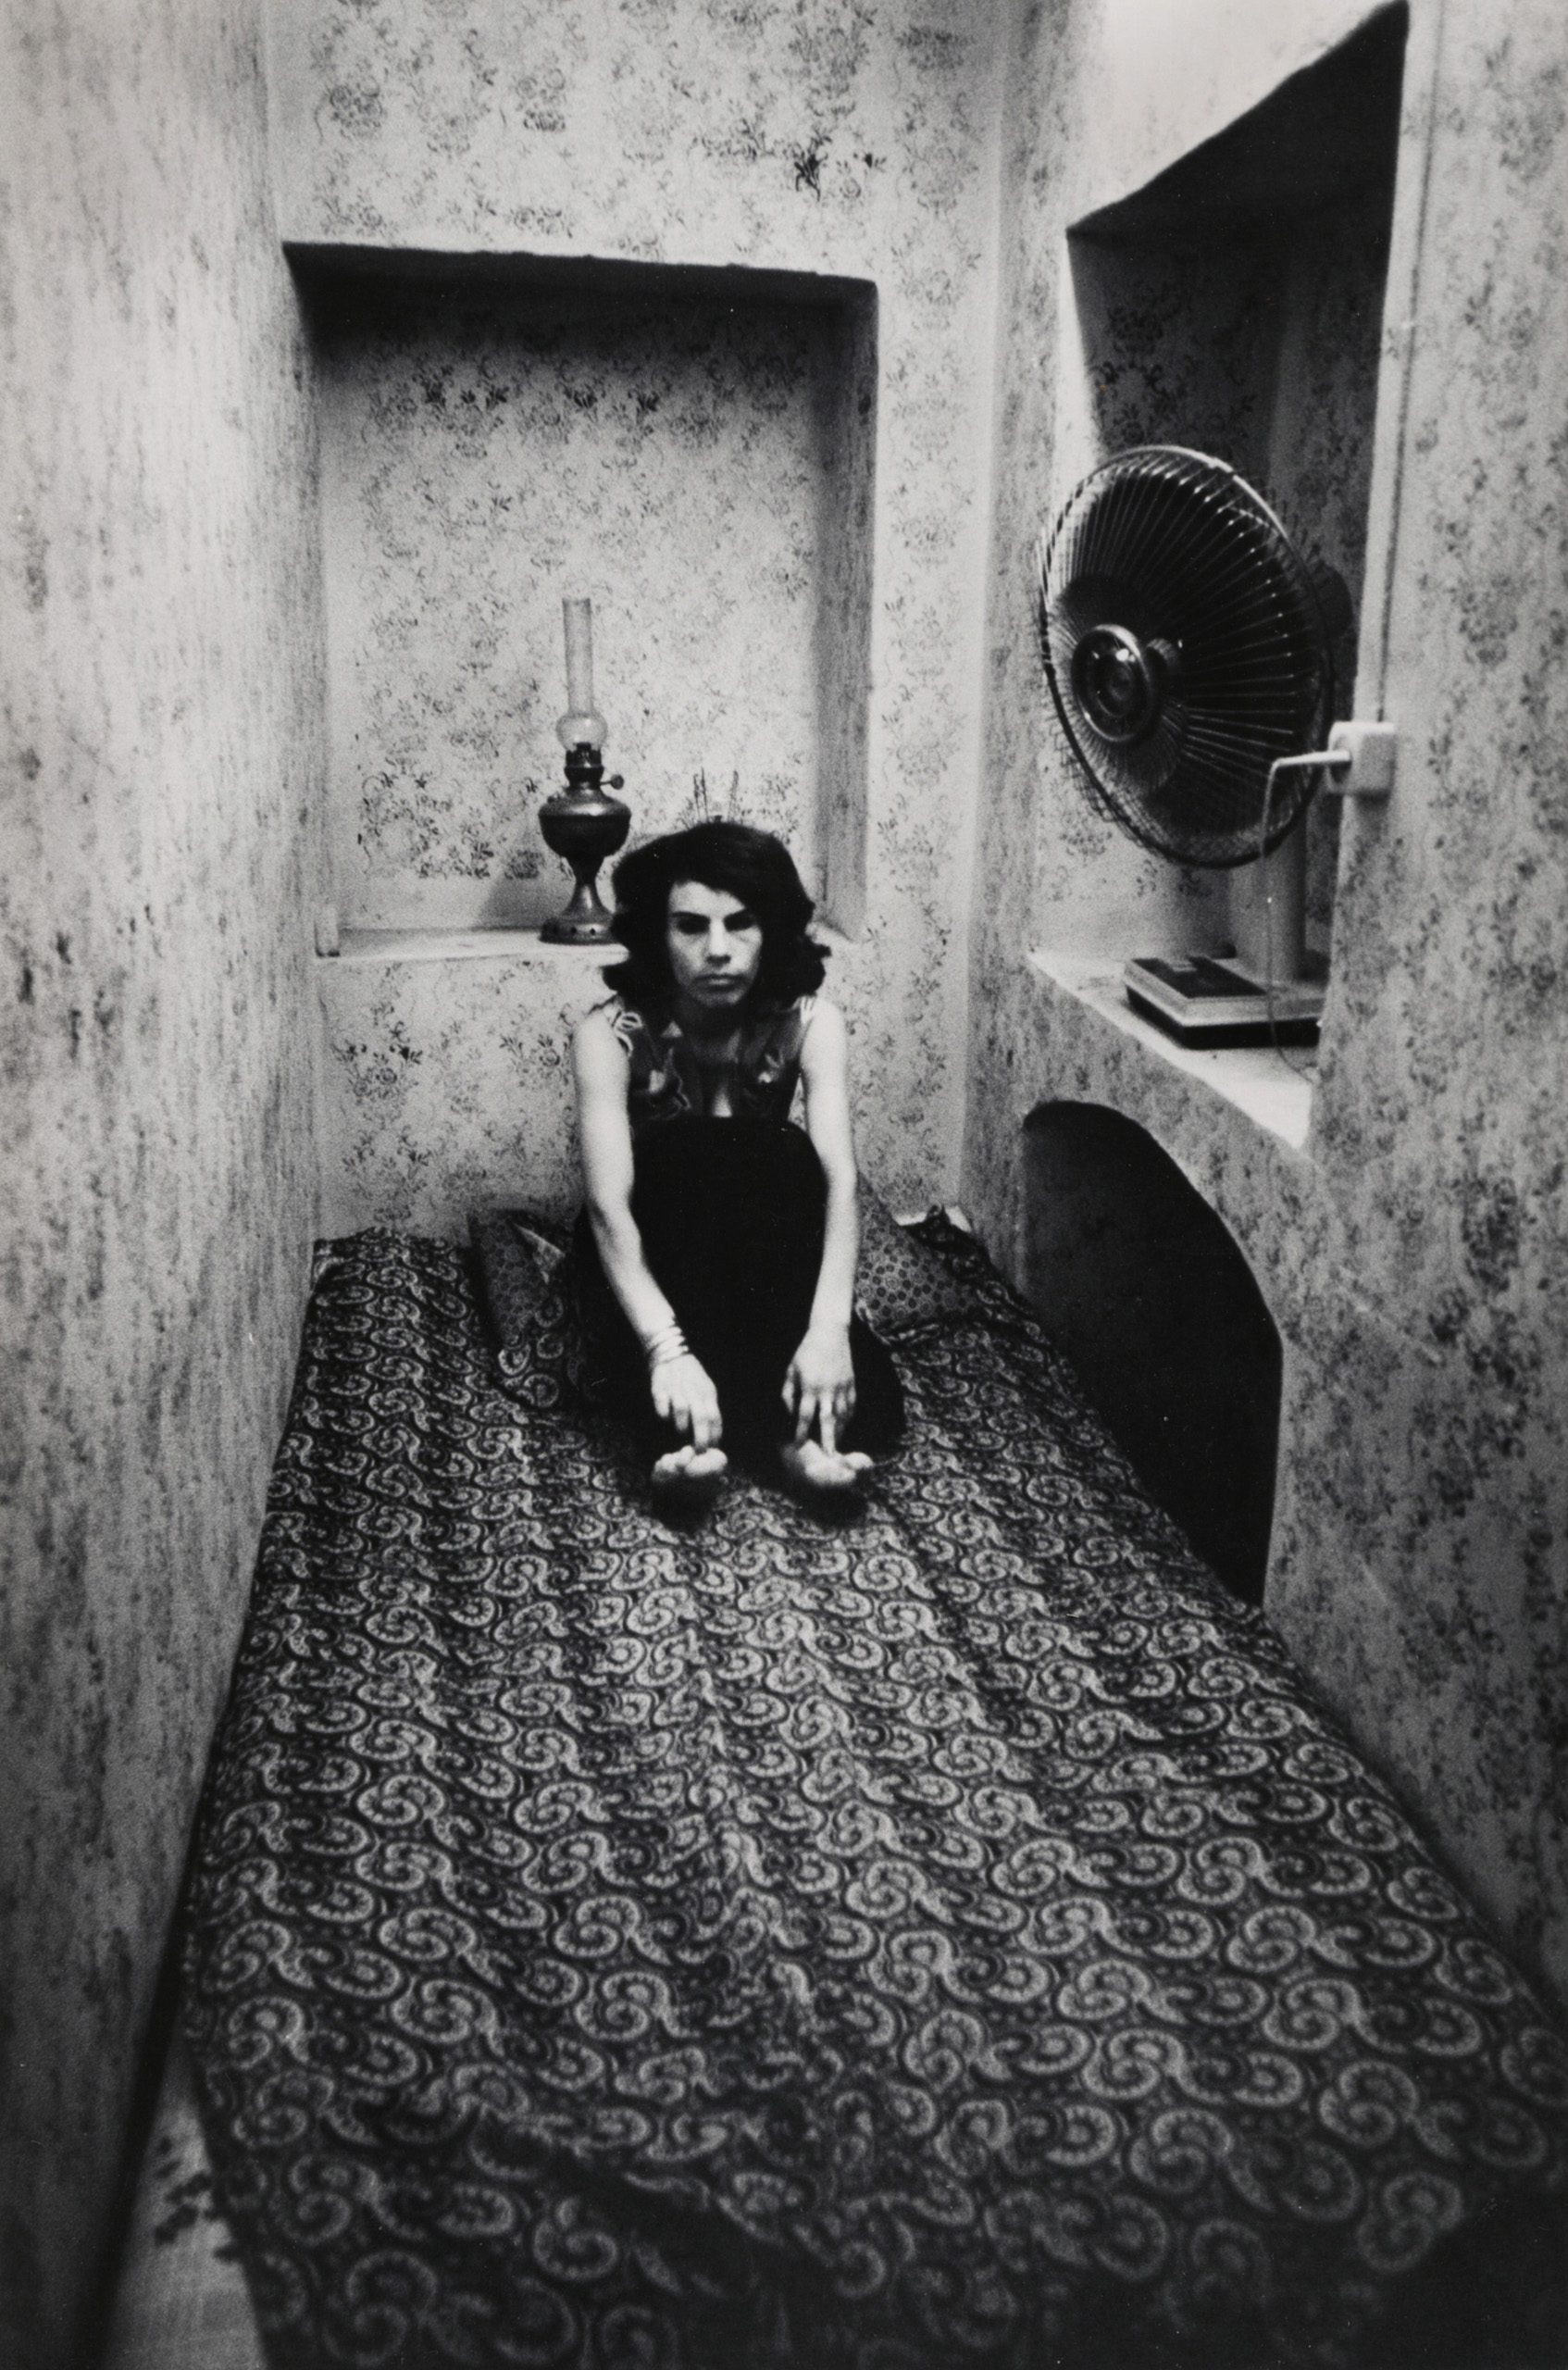 Kaveh Golestan, Untitled (Prostitute series, 1975-77), courtesy Kaveh Golestan Estate and Musée d'Art Moderne de la Ville de Paris.